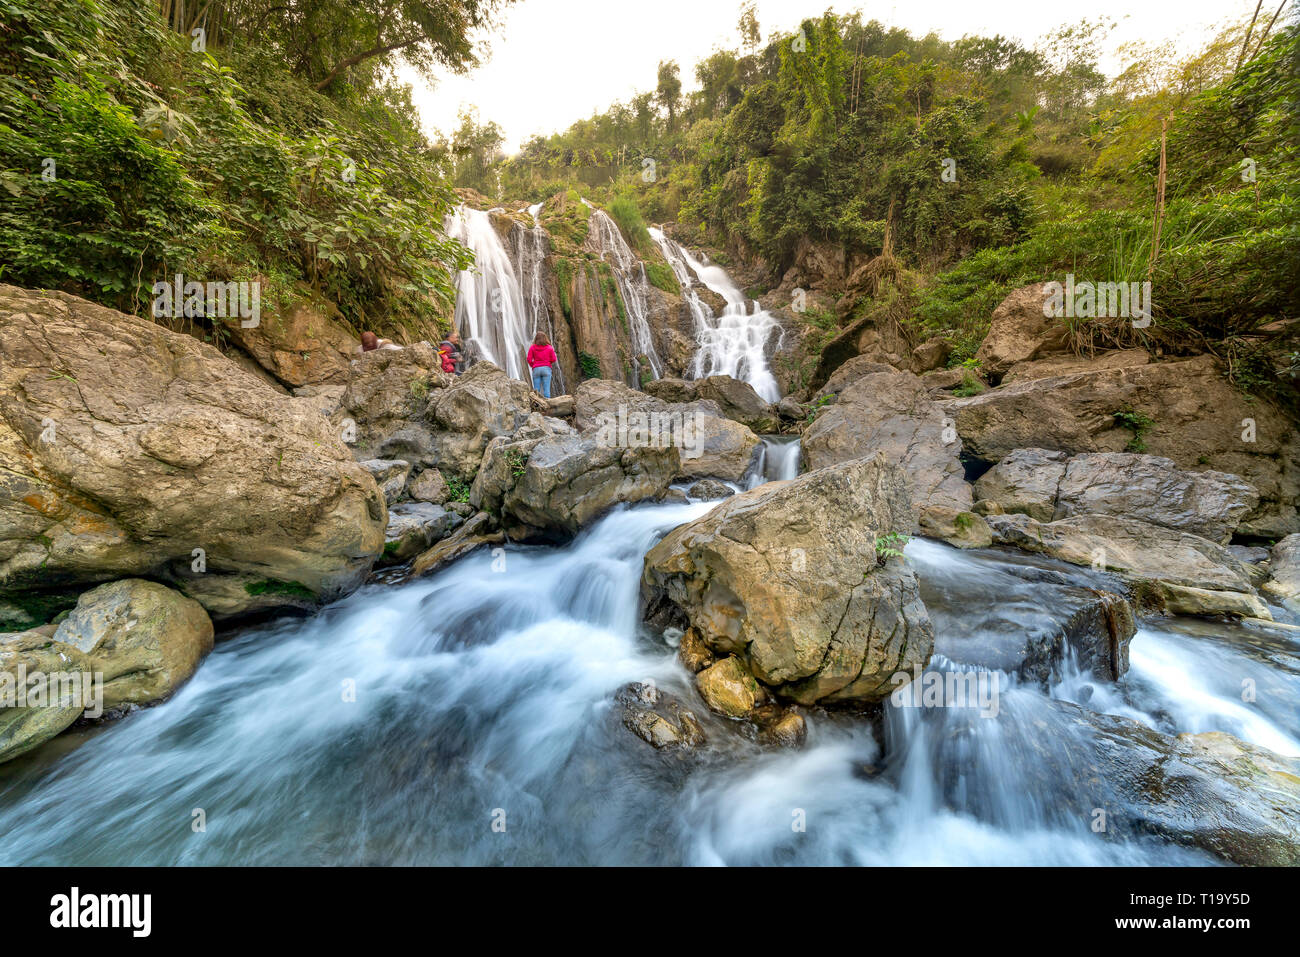 Go Lao waterfall, Mai Chau district, Hoa Binh province, Vietnam - January 4, 2019: The beauty of Go Lao waterfall in Mai Chau district, Hoa Binh provi Stock Photo